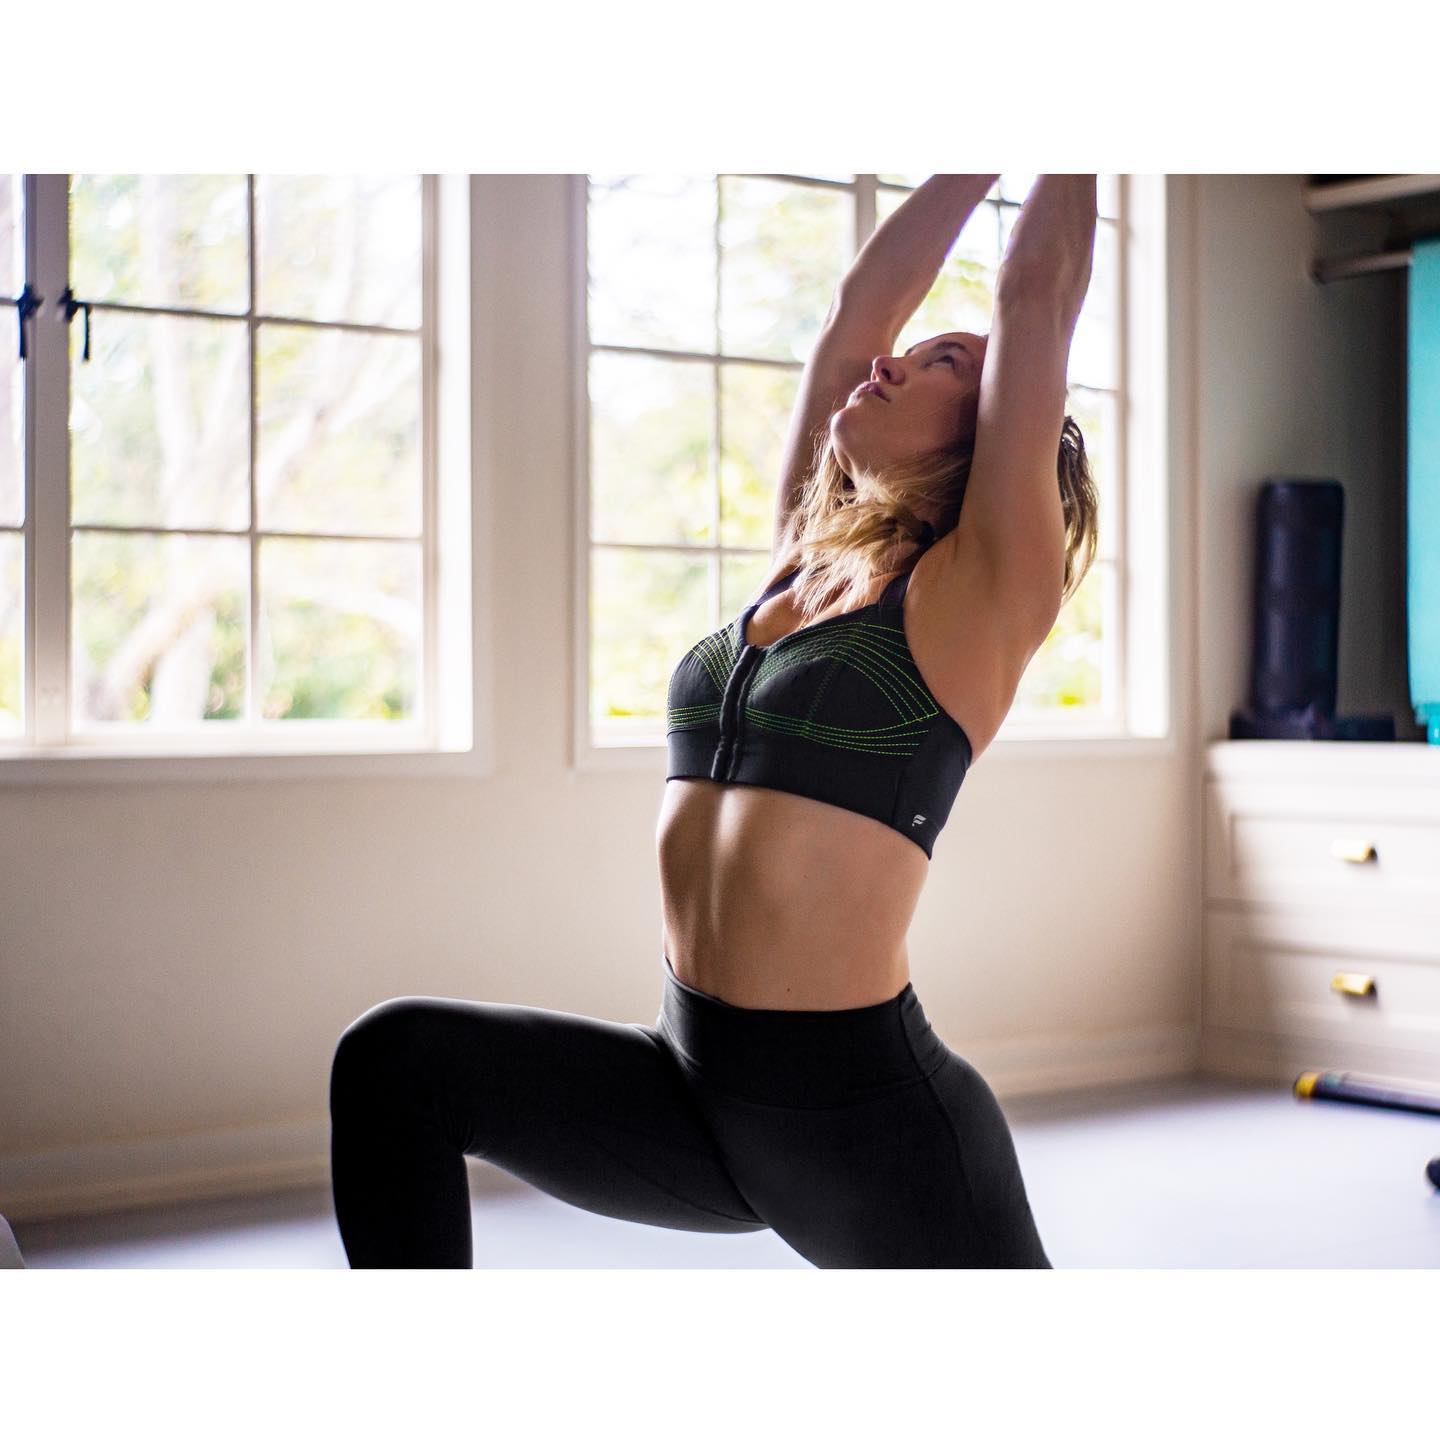 Fotos n°2 : Yoga con Kate Hudson!